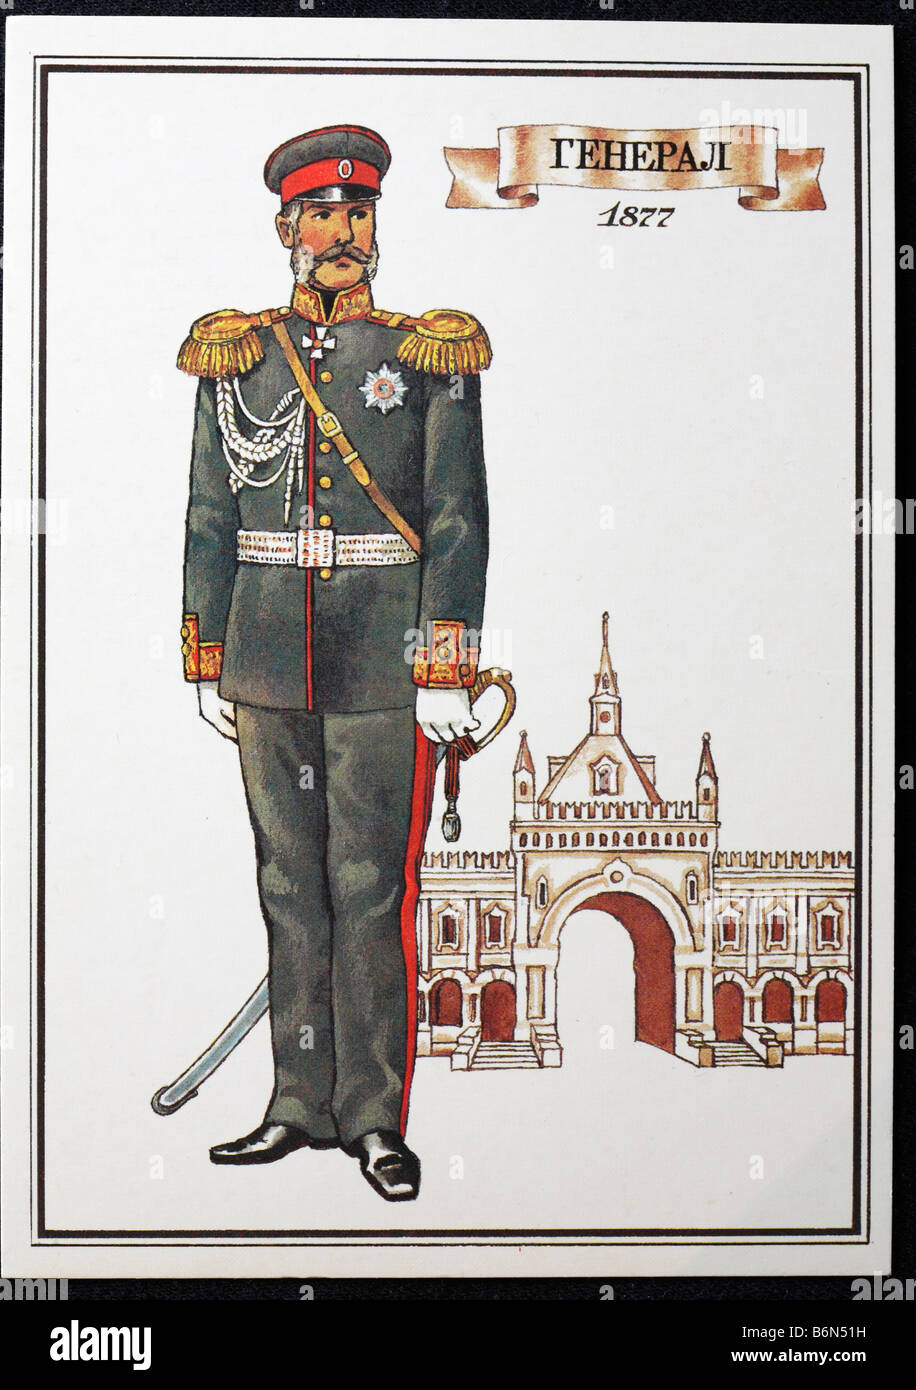 L'uniforme de général de l'armée russe (1877), carte postale, URSS, 1986 Banque D'Images